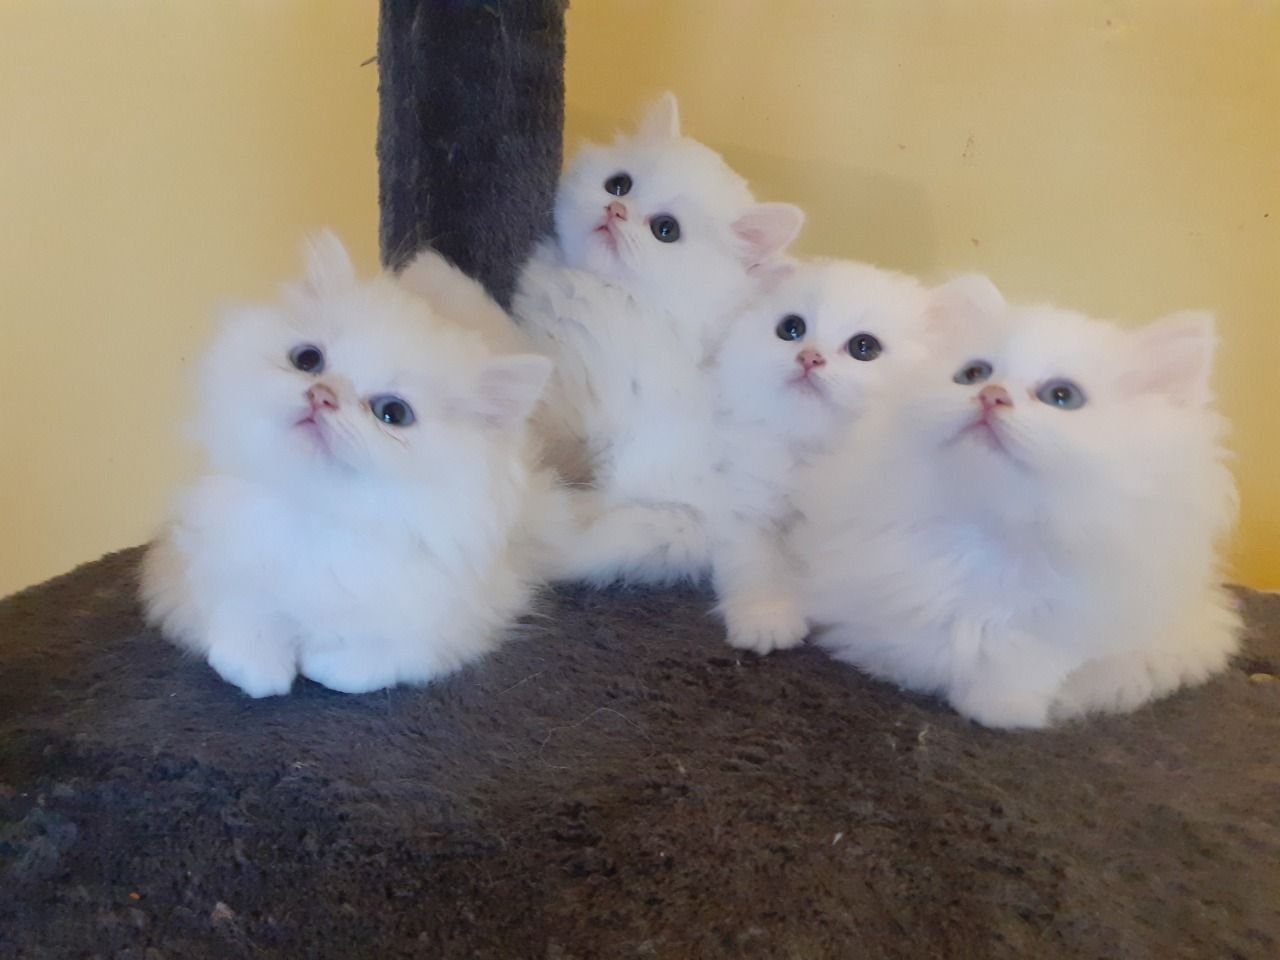 Viva Beangstigend Iedereen Perzische kittens te koop | aangeboden op MarktPlaza.nl